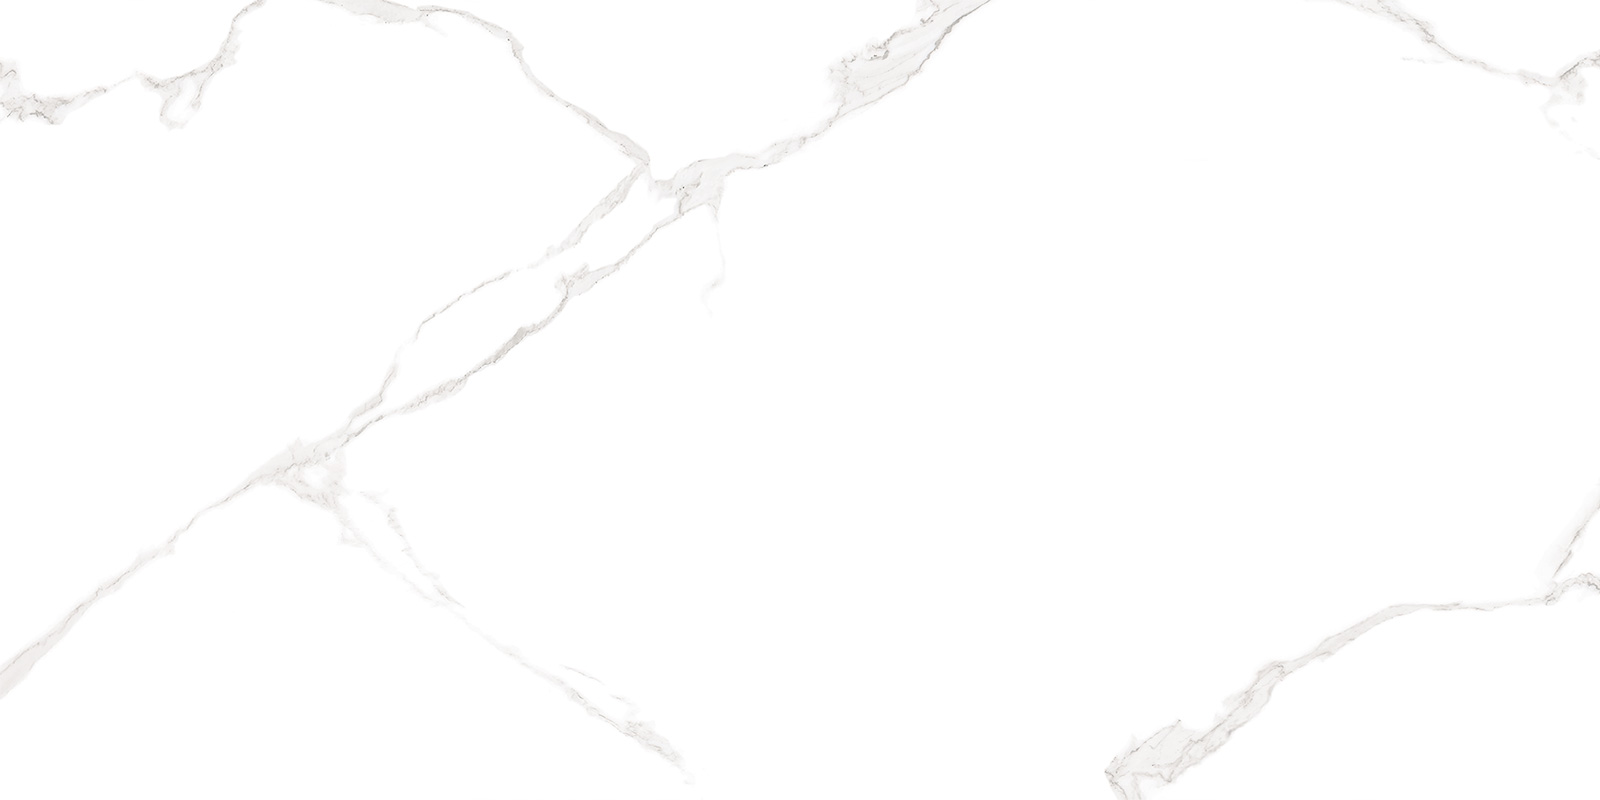 Настенная плитка AltaCera Elemento Bianco Carrara 25x50 плитка настенная altacera interni dark grey 25x50 см